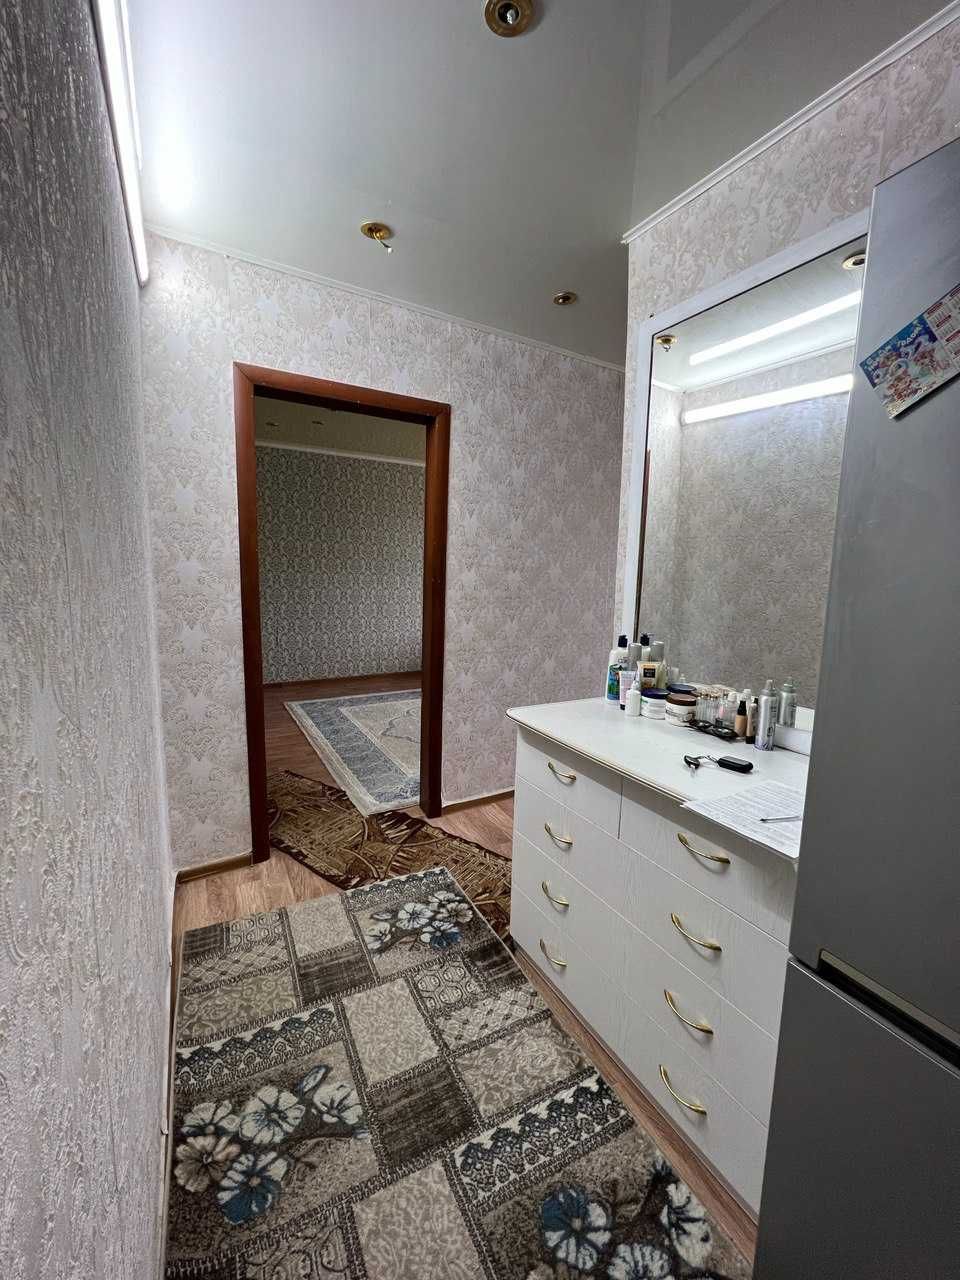 Продаётся отличная 2-х комнатная квартира по улице Узкоколейная.